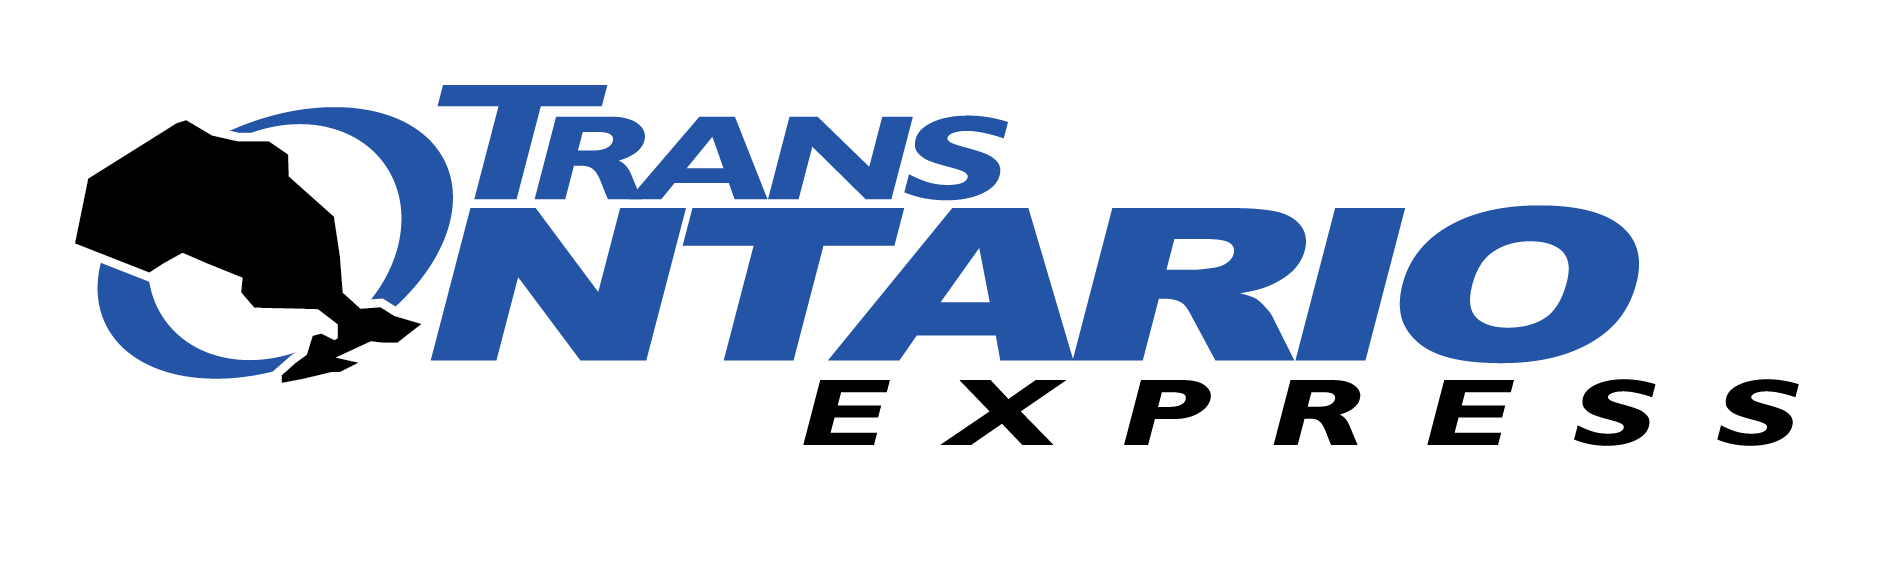 Trans-Ontario Express logo